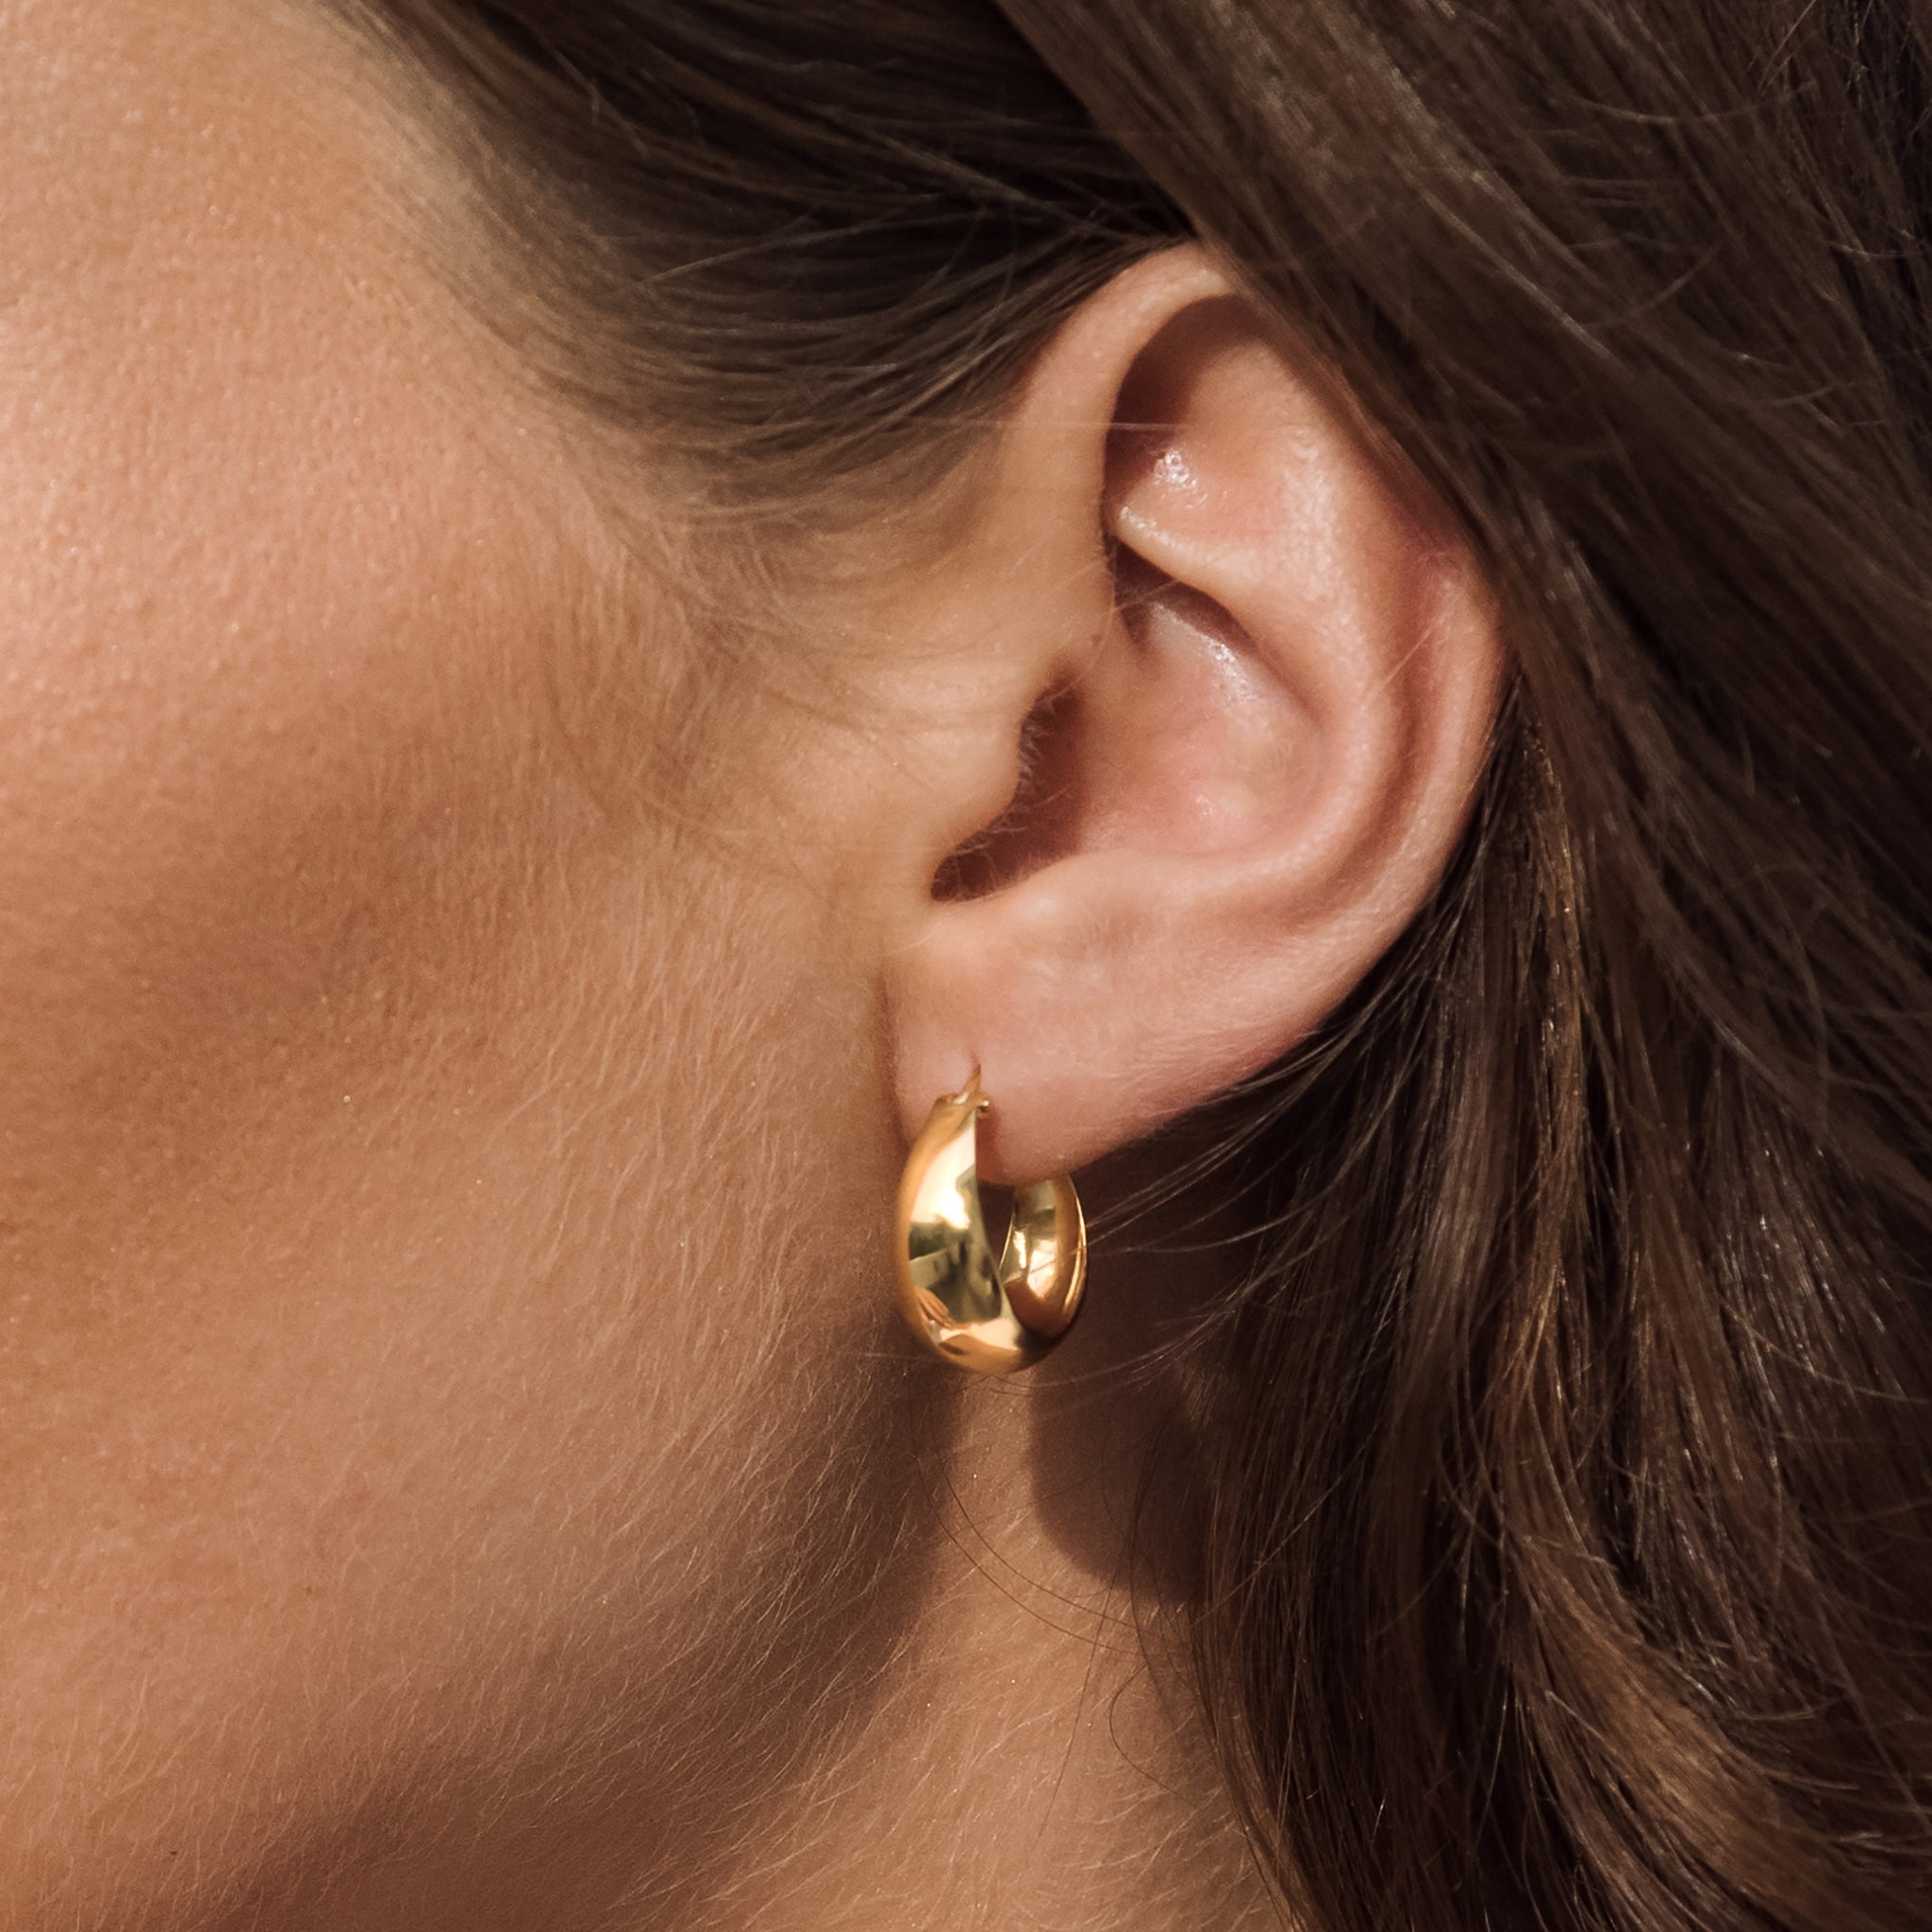 Chunky Gold Hoop Earrings Jorunn Linjer Jewelry 6174